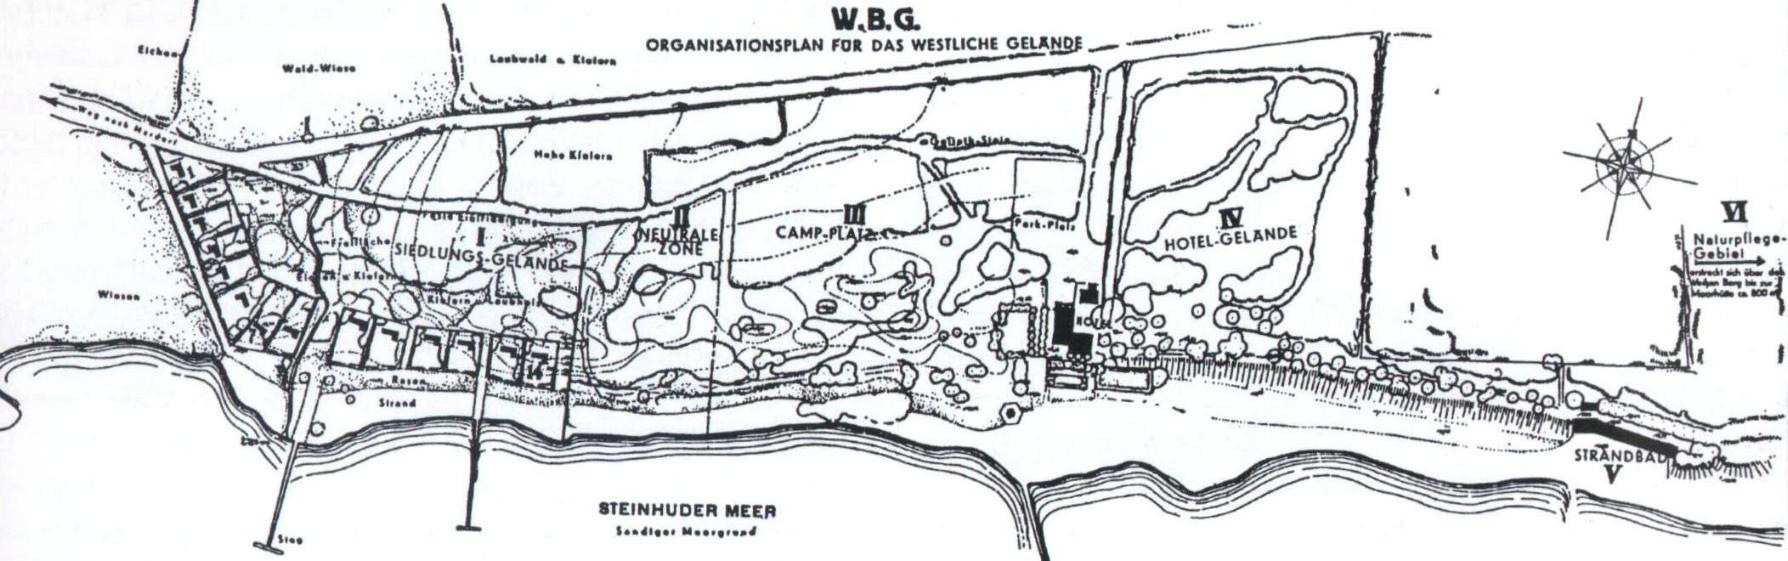 Die Weiße Berg GmbH erwirbt das Grundstück Nr.132 am Weißen Berg. Die Nr. wird nach 1950 neu vergeben (Zum Fuhrenkamp 5). Am Weißen Berg entsteht die Nr.134 von C.